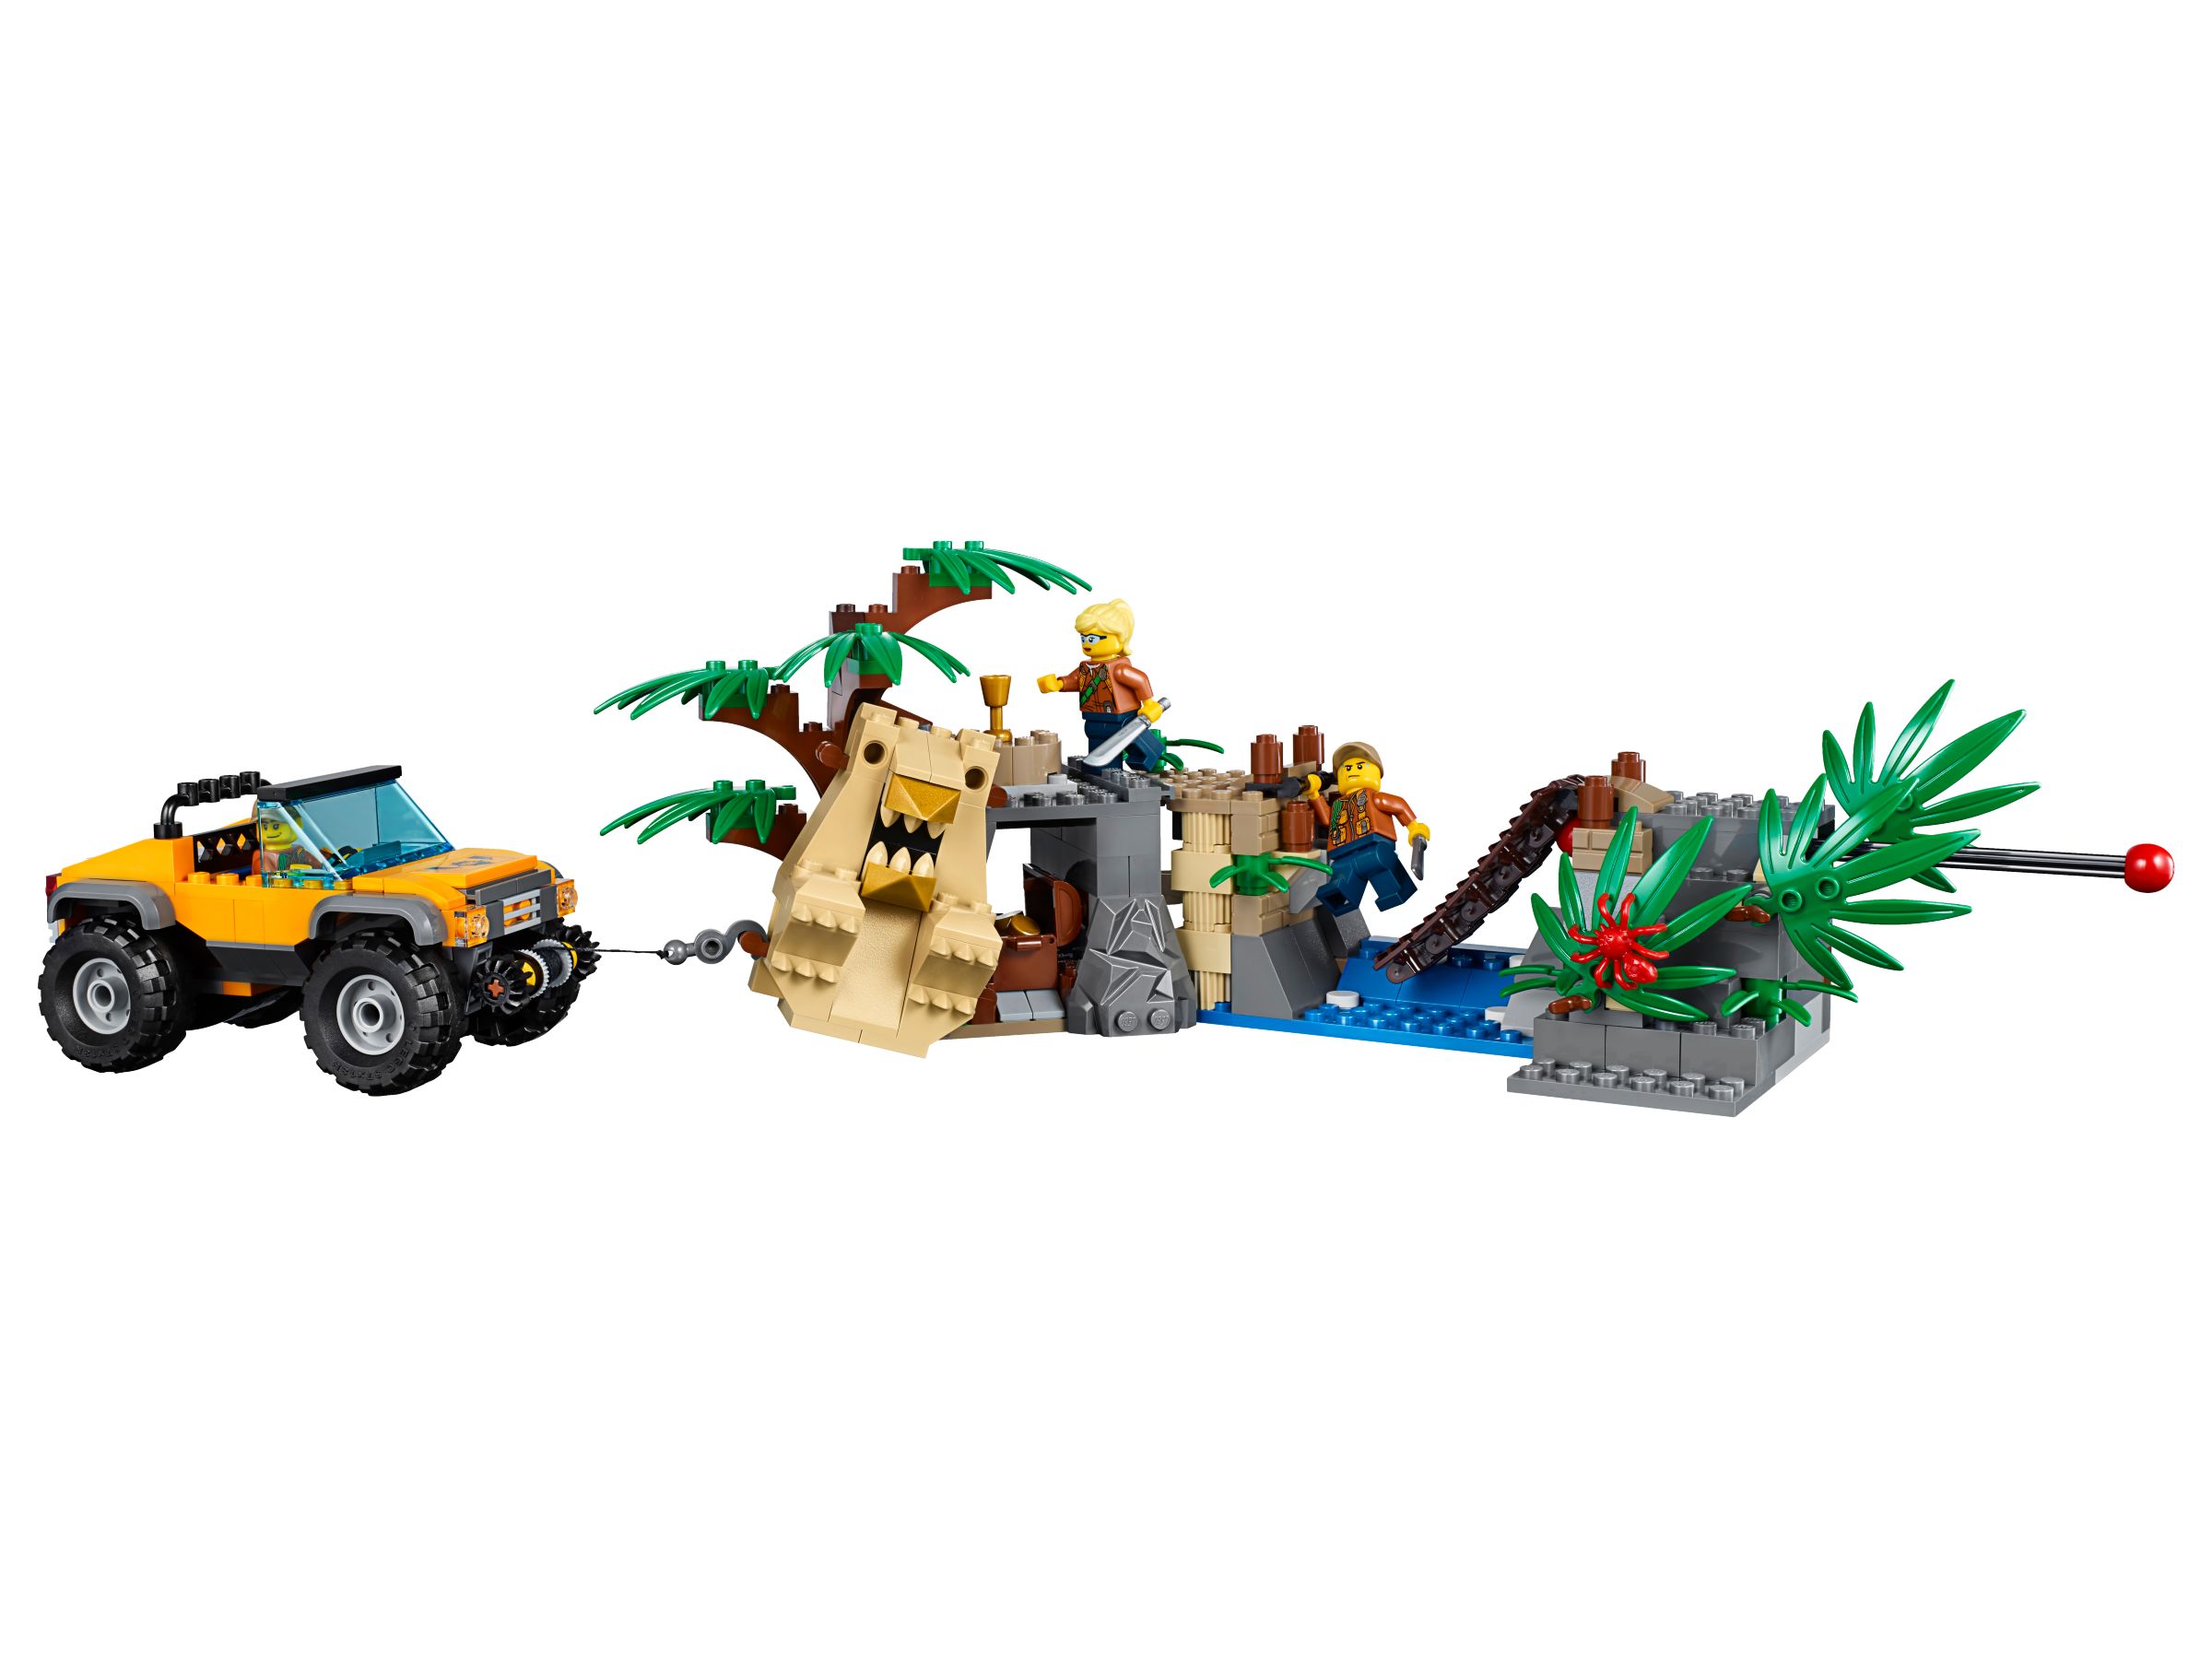 LEGO City 60162 Dschungel-Versorgungshubschrauber LEGO_60162_alt7.jpg